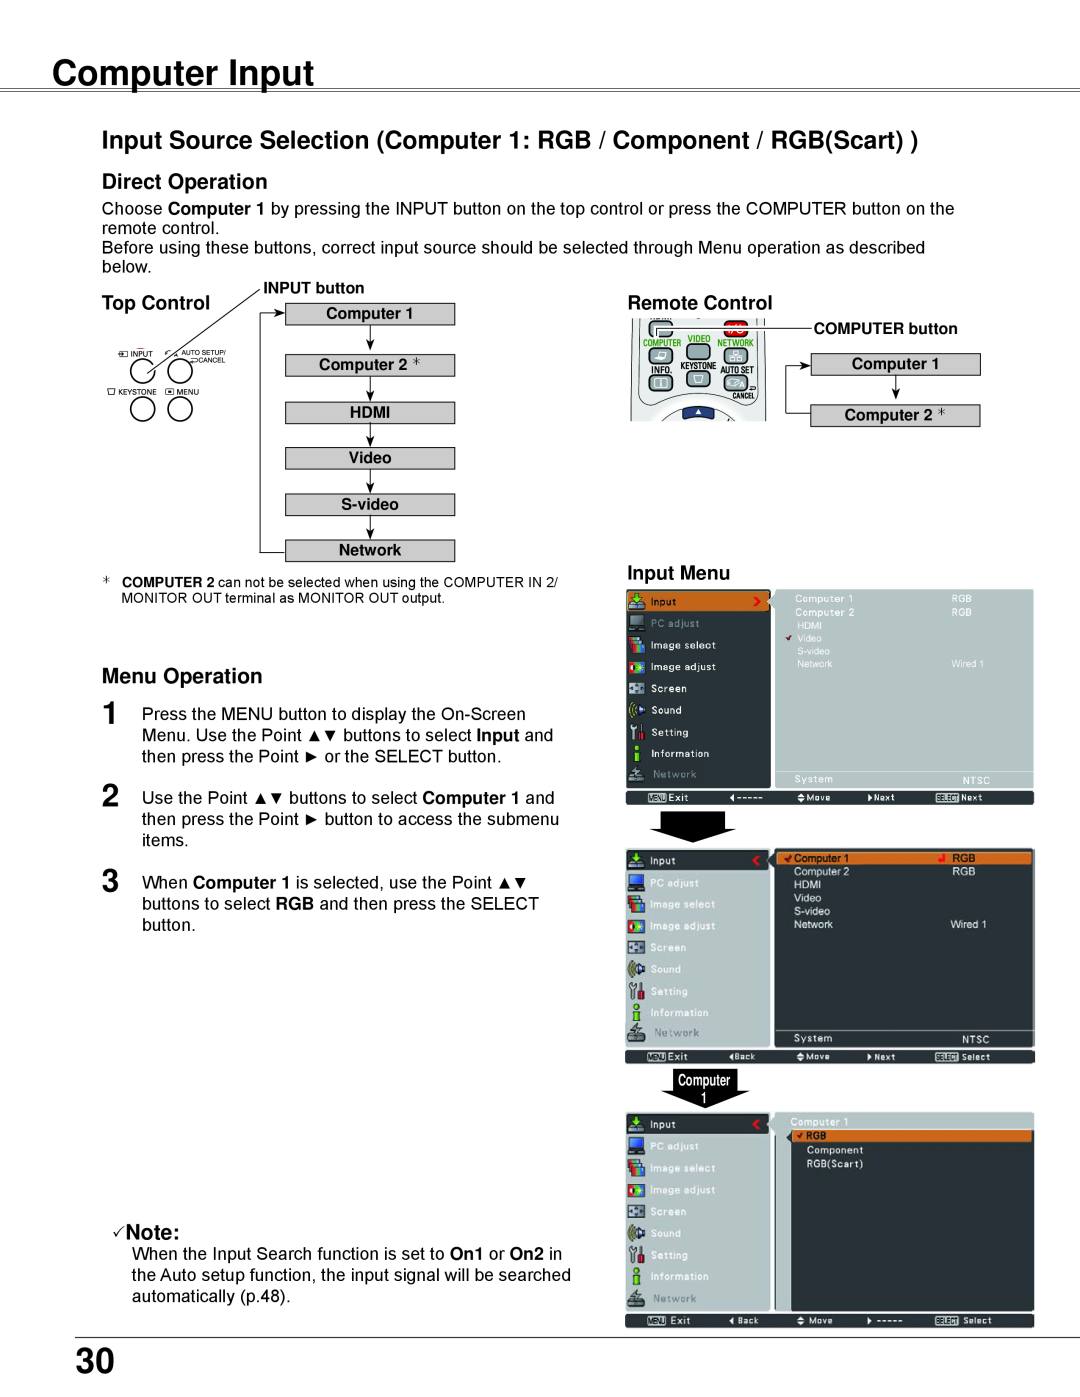 Sanyo PLC-WXU700 Computer Input, Input Source Selection Computer 1 RGB / Component / RGBScart, Input Menu, Menu Operation 